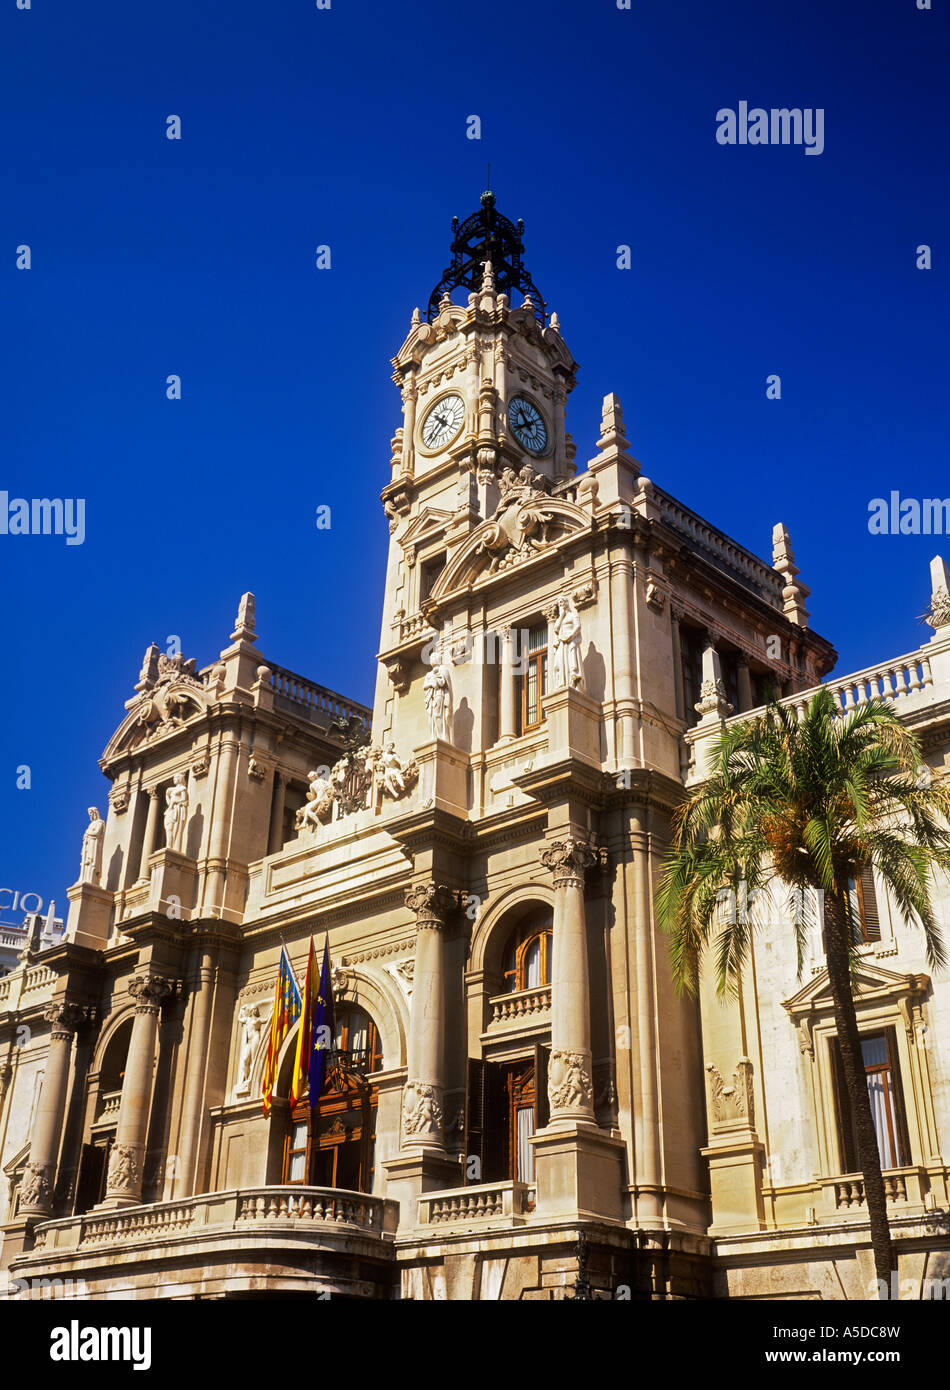 Plaza del Ayuntamiento de ville Valencia Espagne Banque D'Images